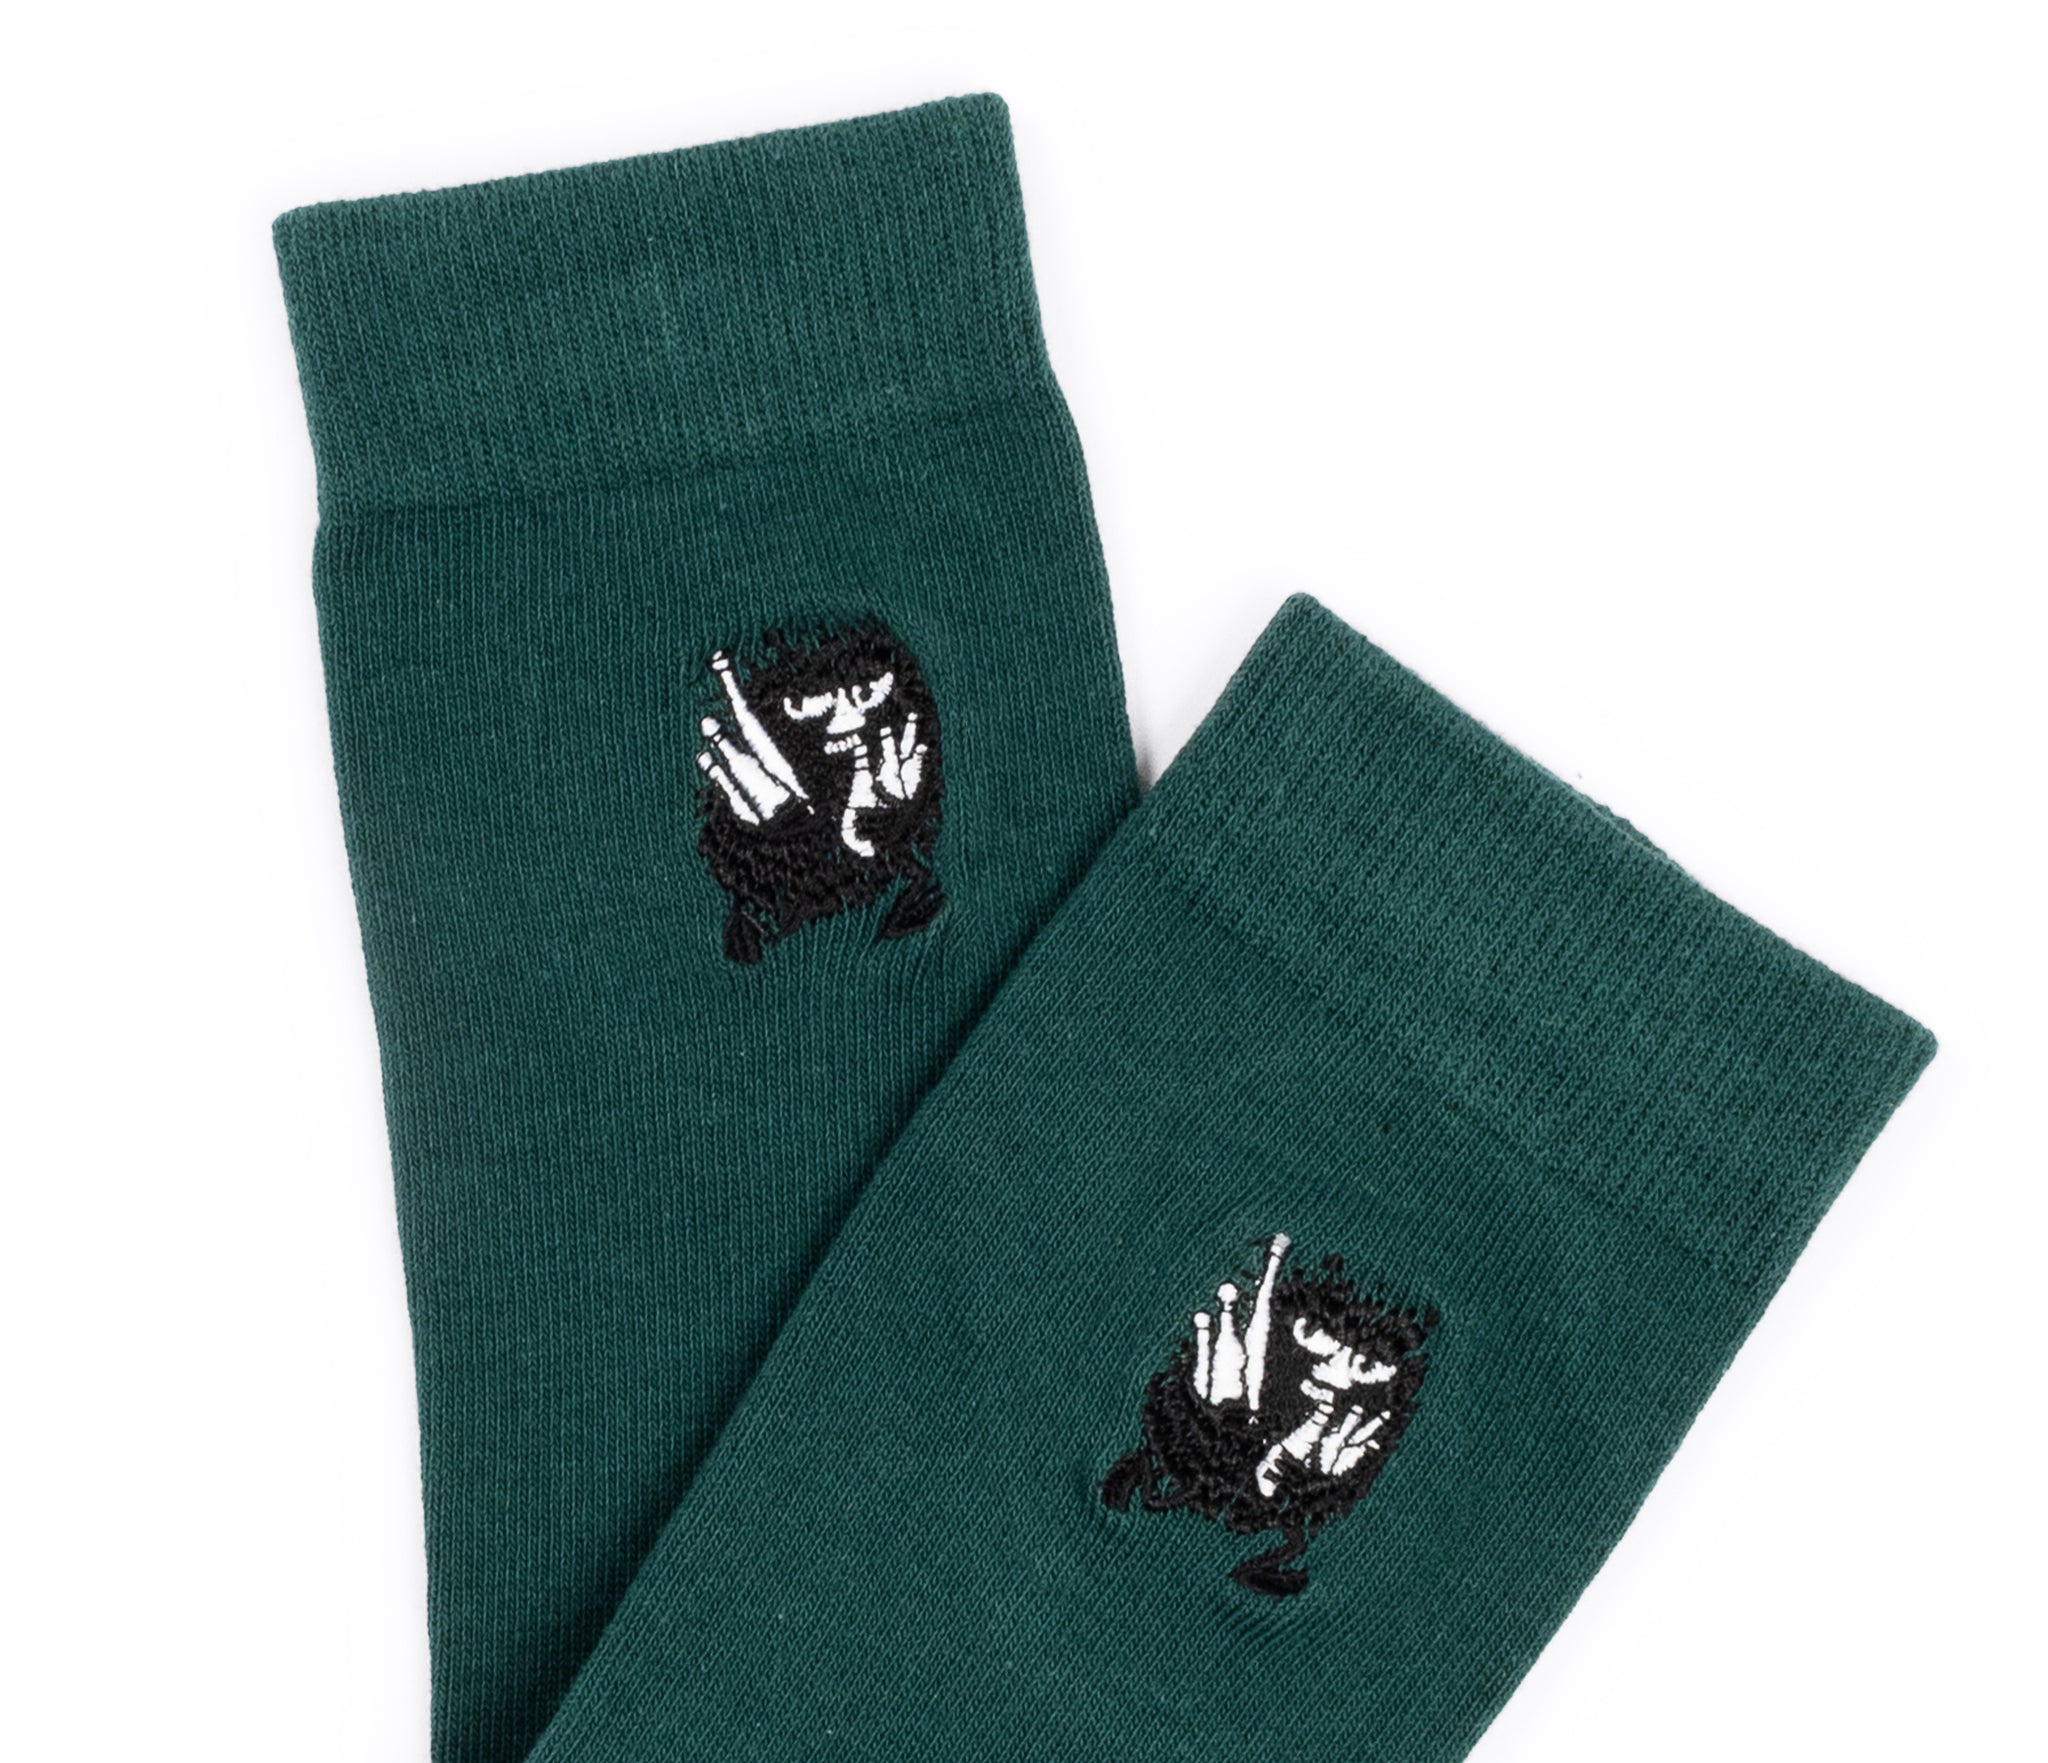 Moomin Men’s Embroidery Socks Green Stinky | Muumi Miesten Brodeeratut Sukat Vihreä Haisuli